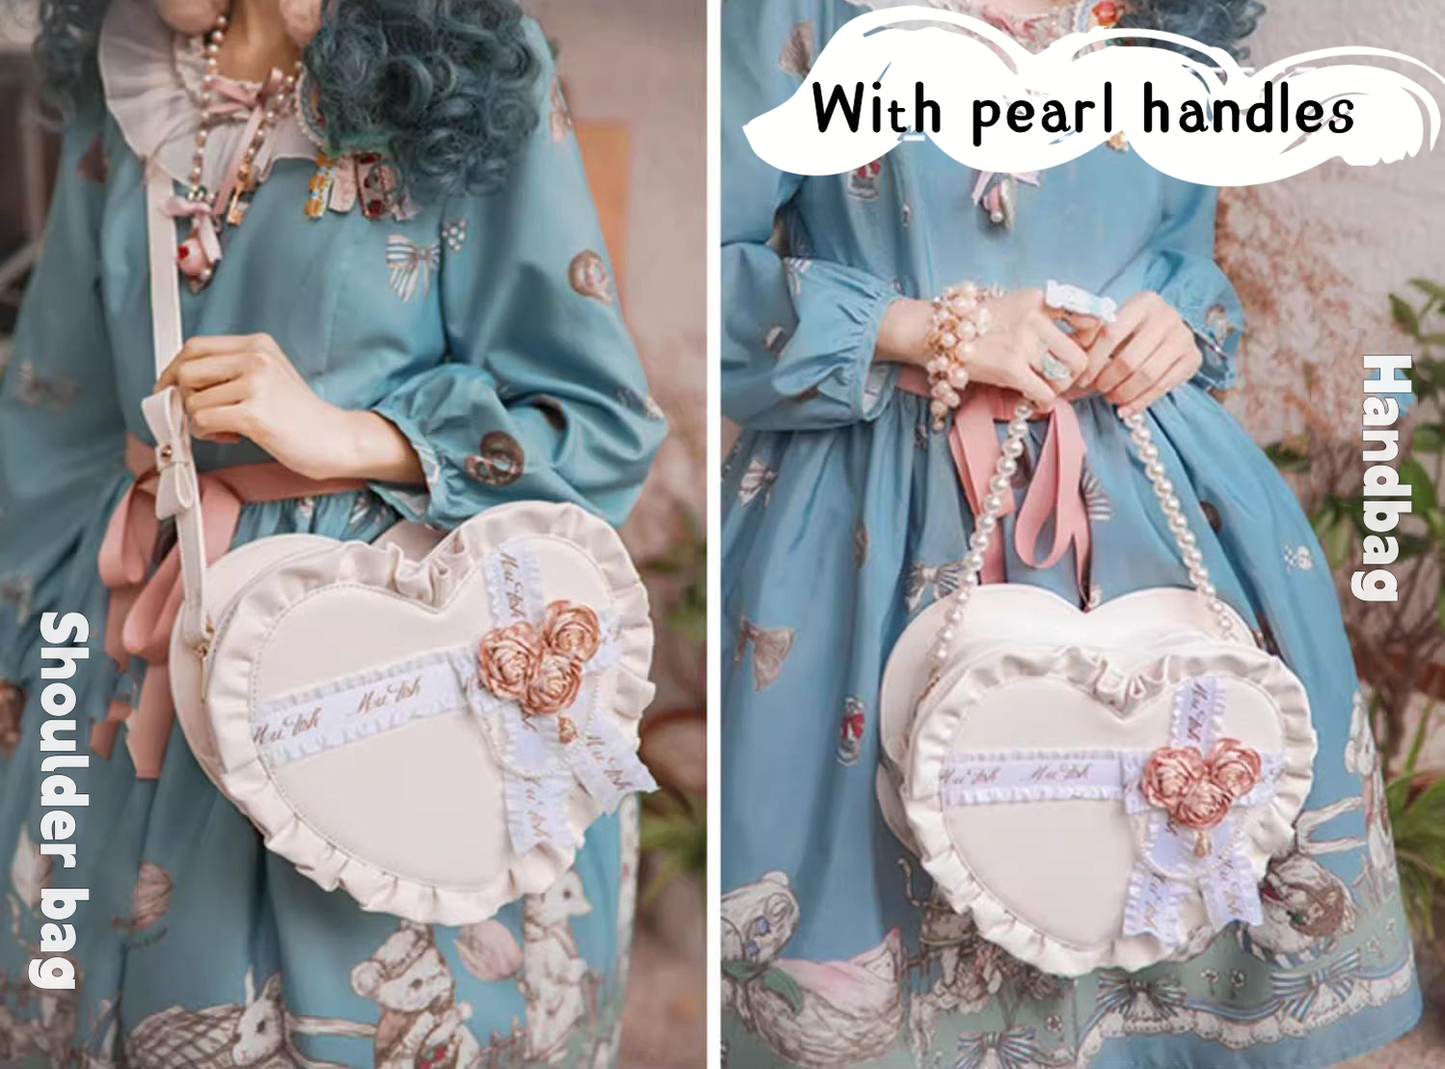 Lolita Handbag Heart Shaped Rose Crossbody Bag 35776:542140